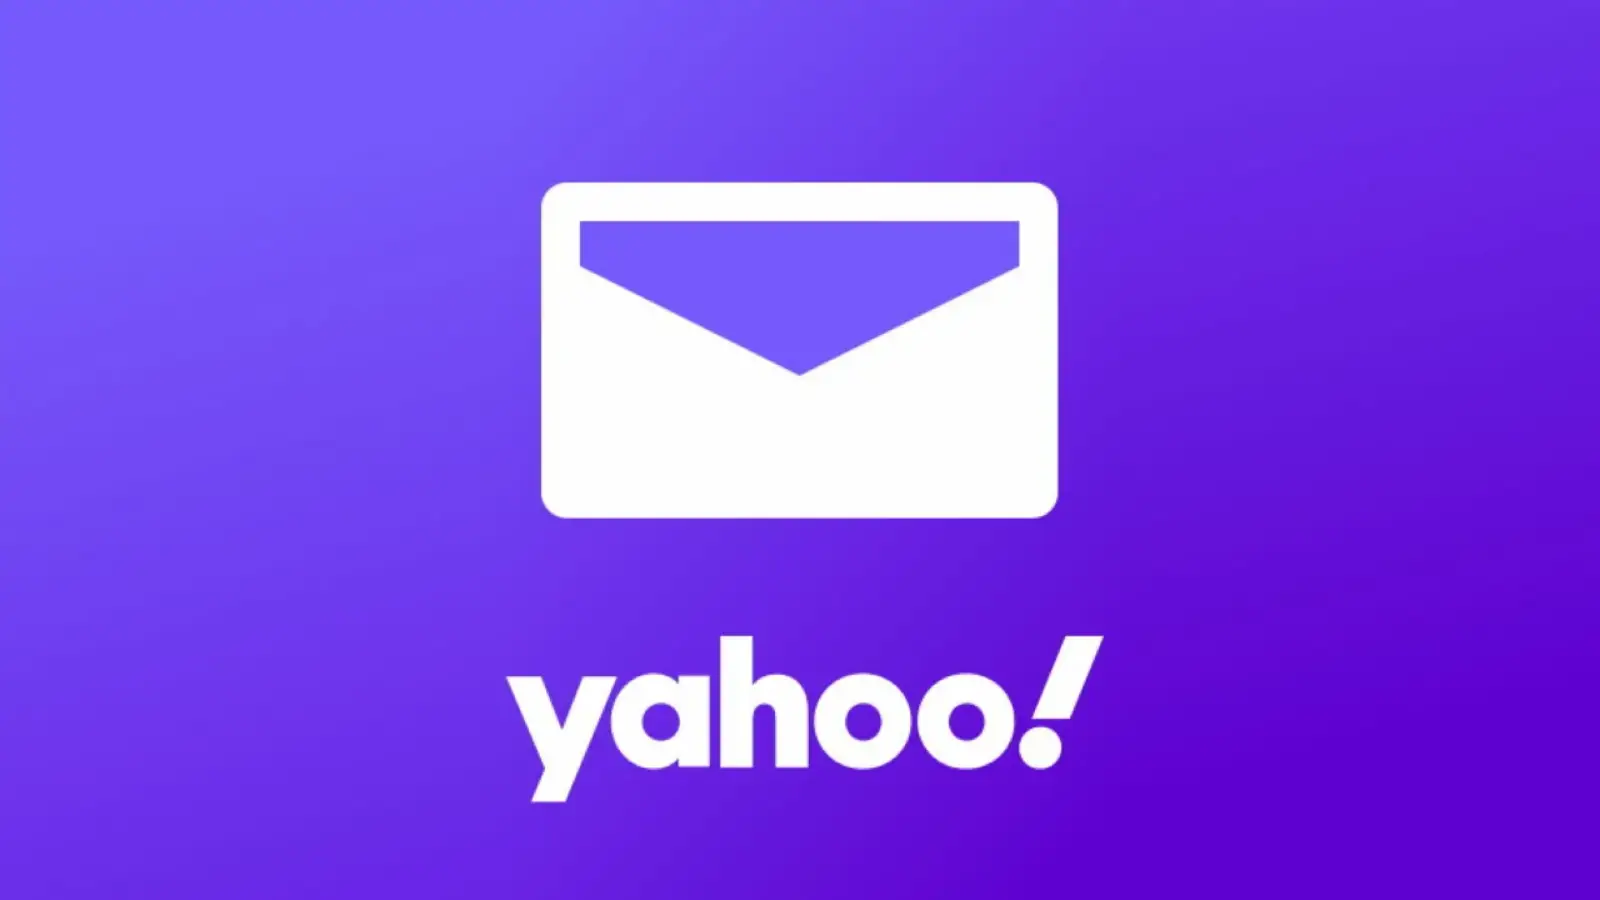 Yahoo! L'aggiornamento per iPhone e Android è disponibile con News